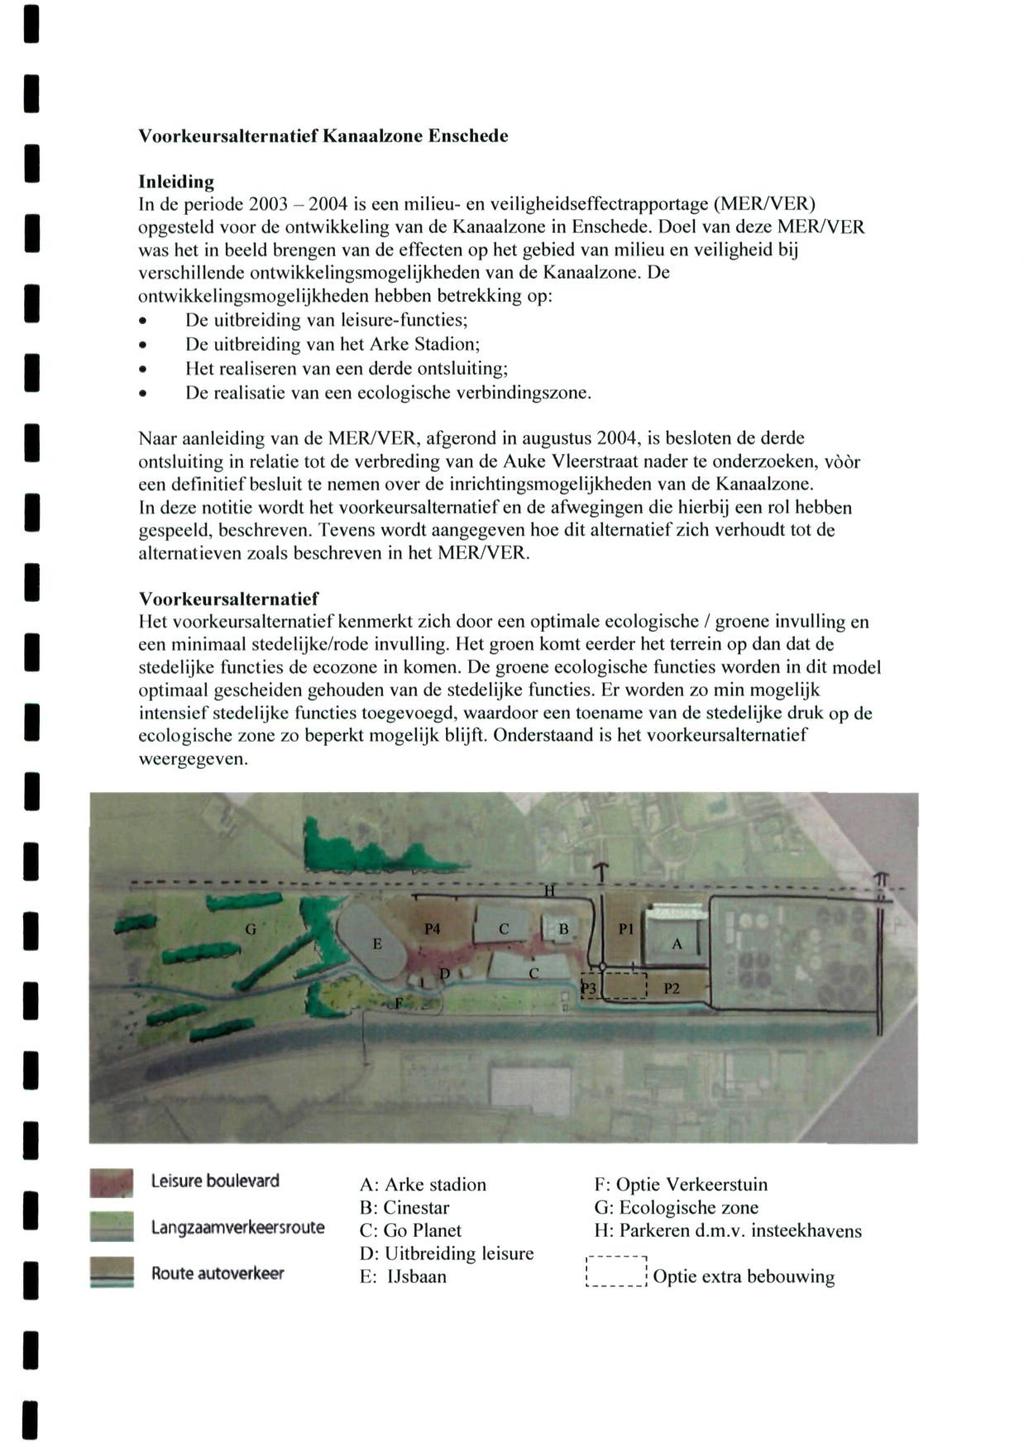 Voorkcursalternatief Kanaalzone Enschede Inleiding In de periode 2003-2004 is een milieu- en veiligheidseffectrapportage (MER/VER) opgesteld voor de ontwikkeling van de Kanaalzone in Enschede.